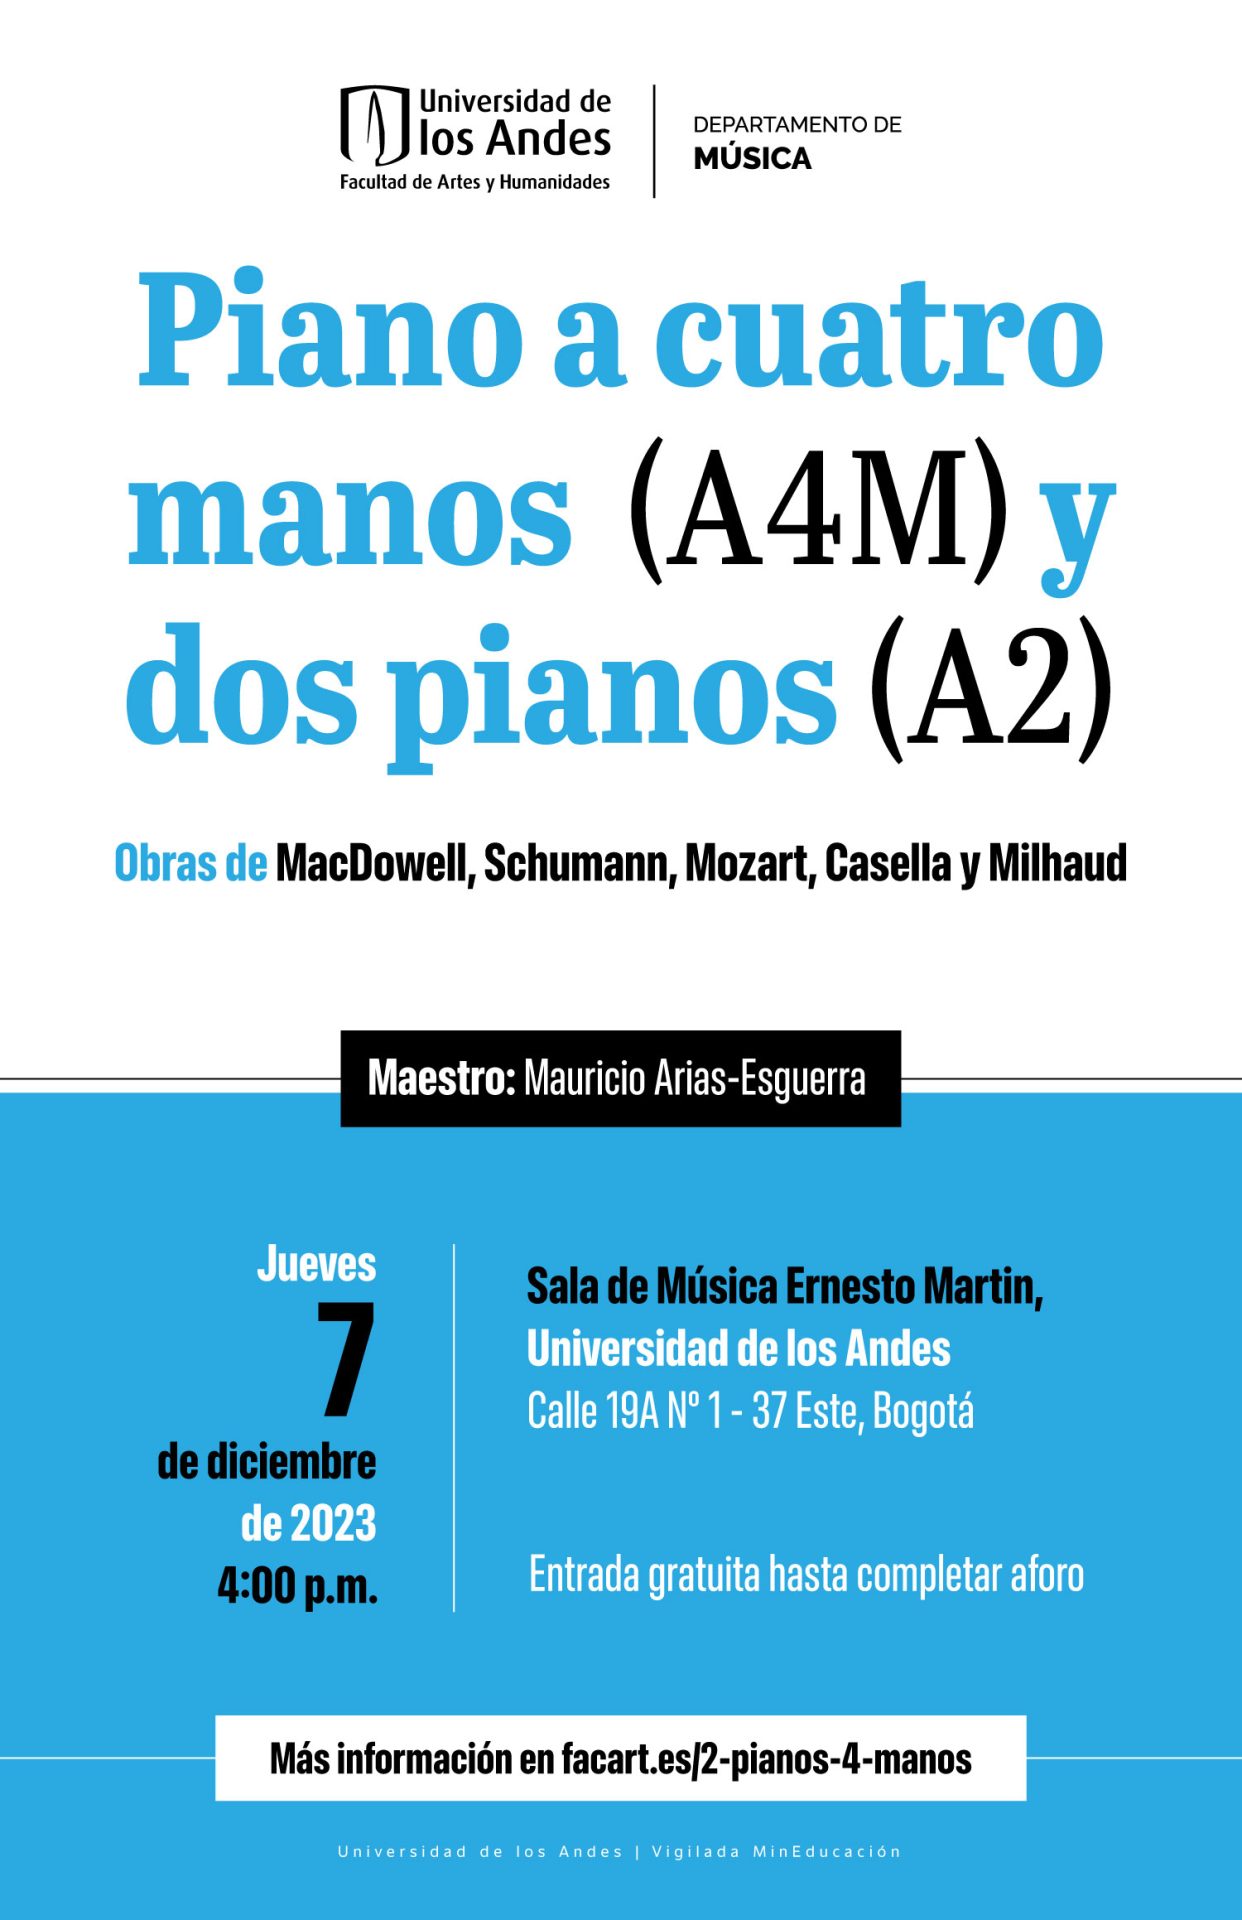 Jueves 7 de diciembre de 2023 a las 4:00 p.m. en la sala de música Ernesto Martin, Universidad de los Andes